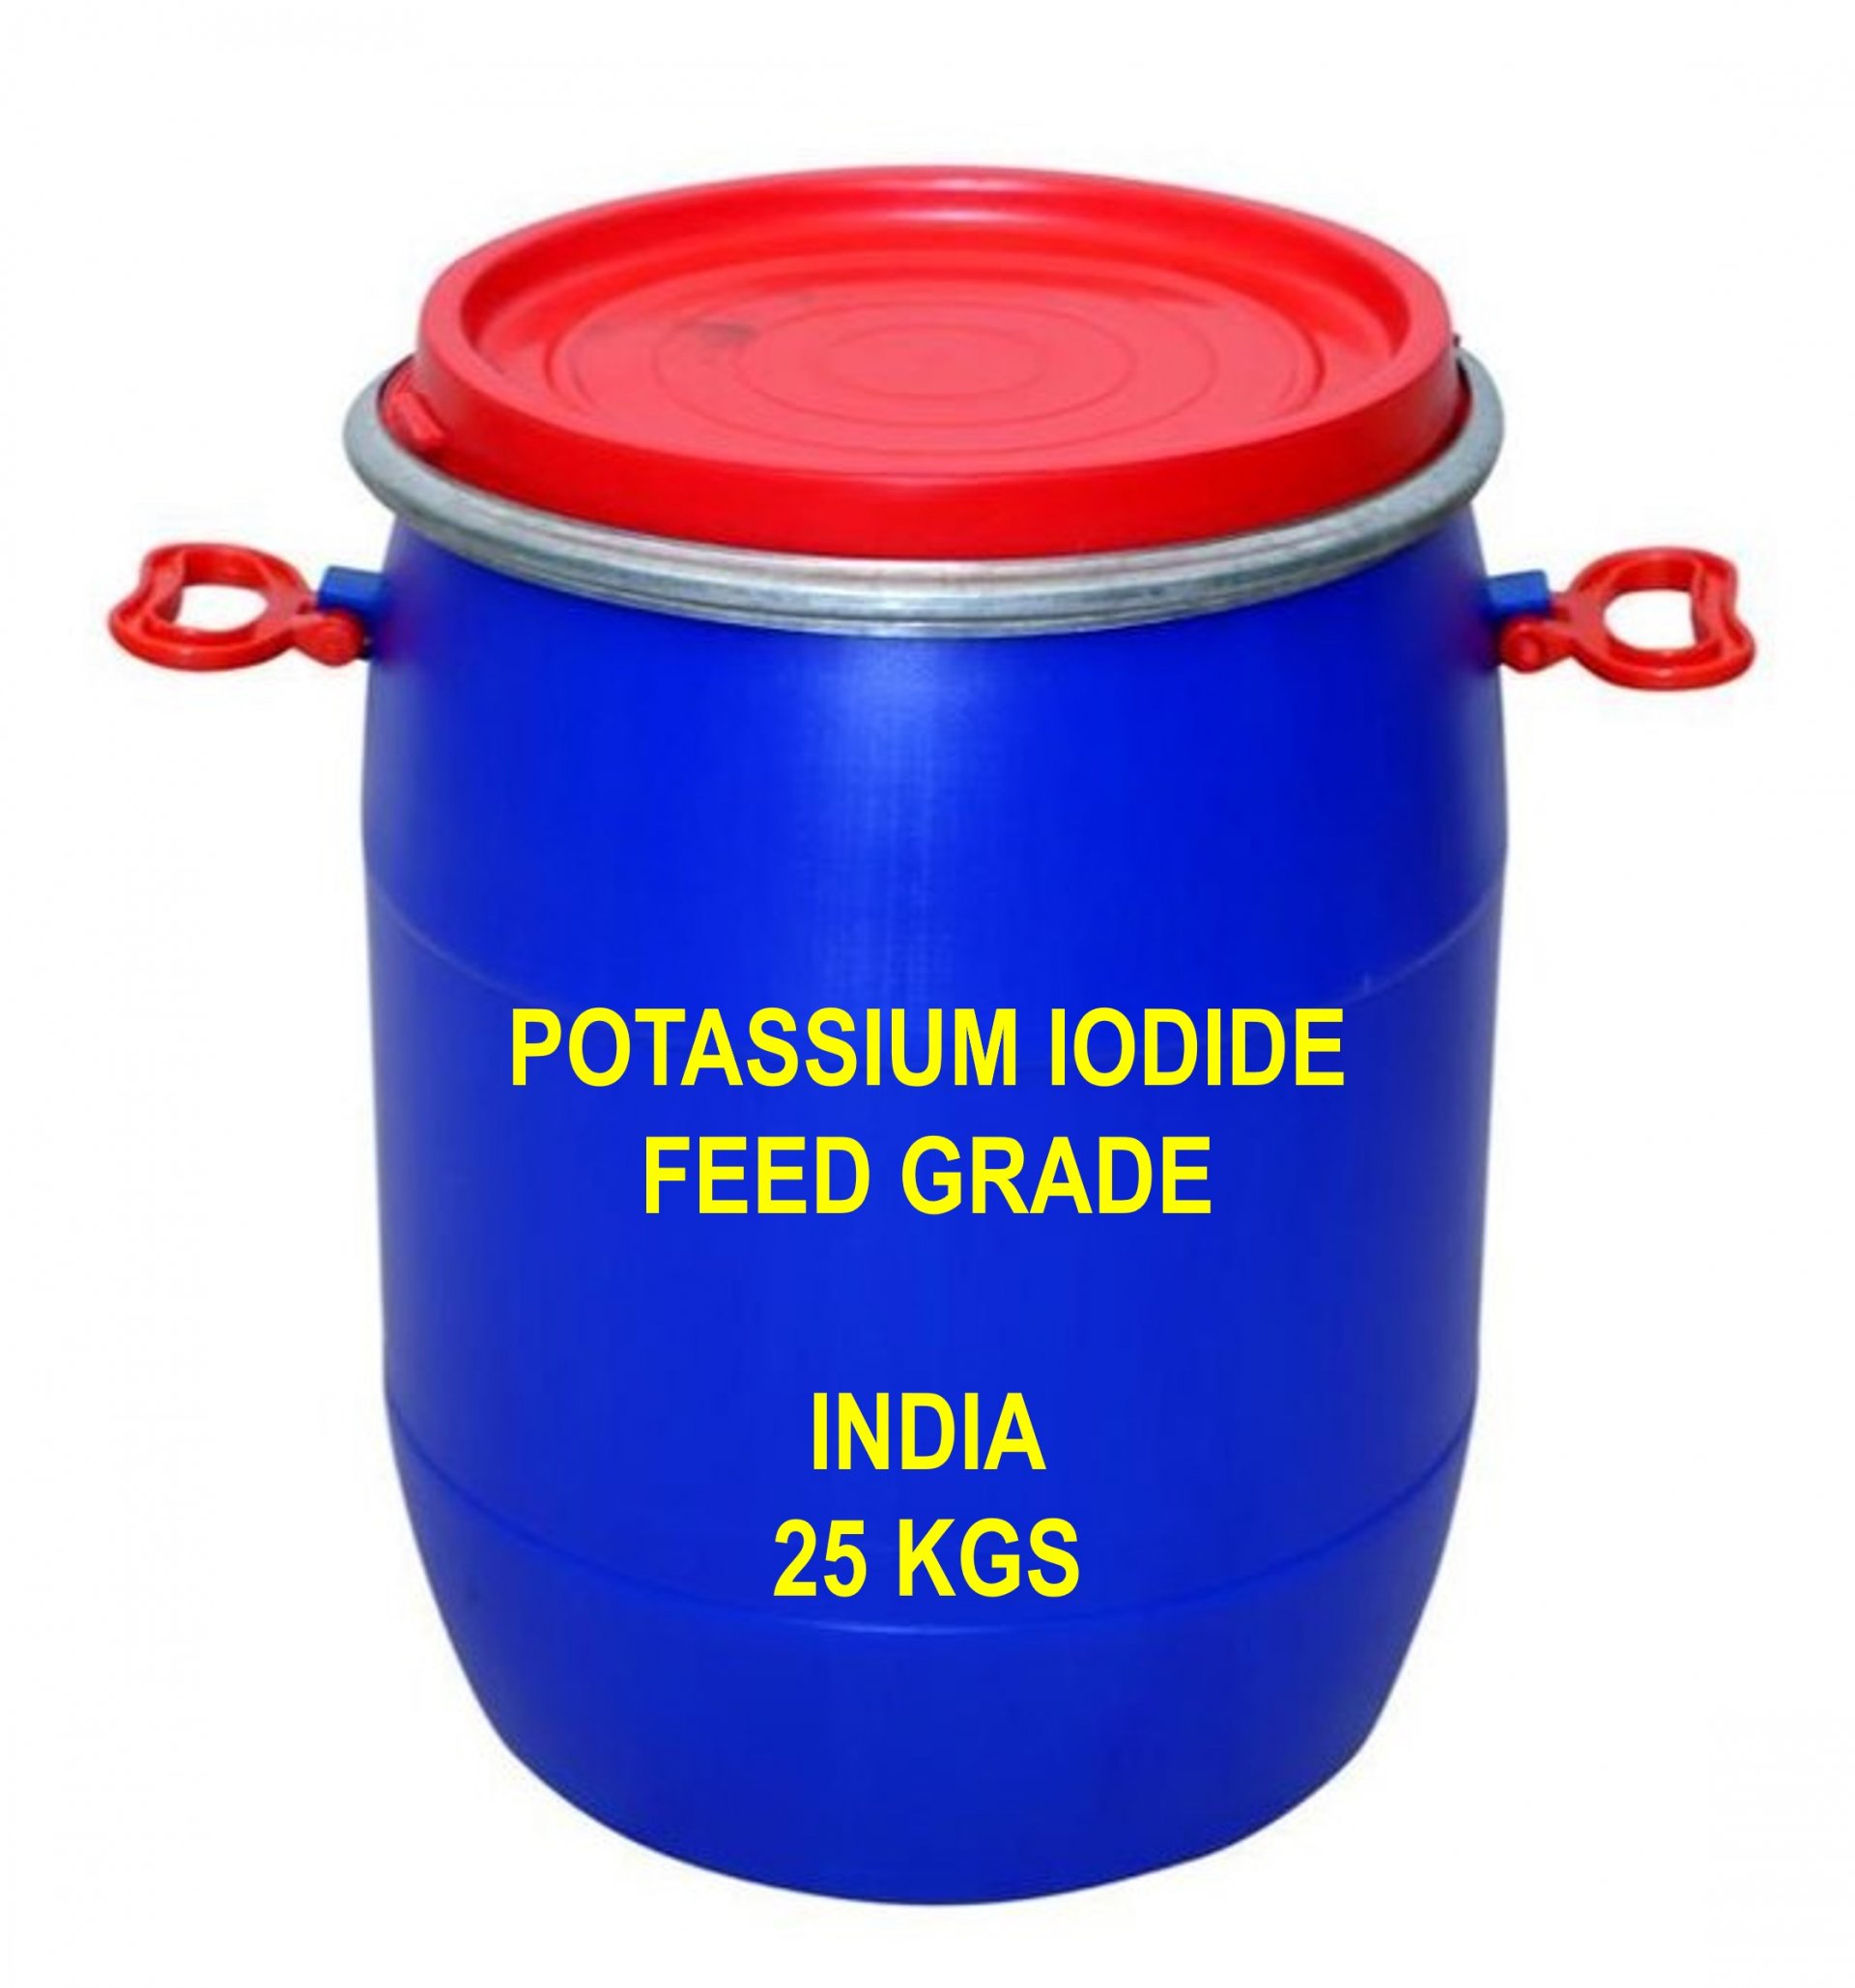 POTASSIUM IODIDE FEED GRADE